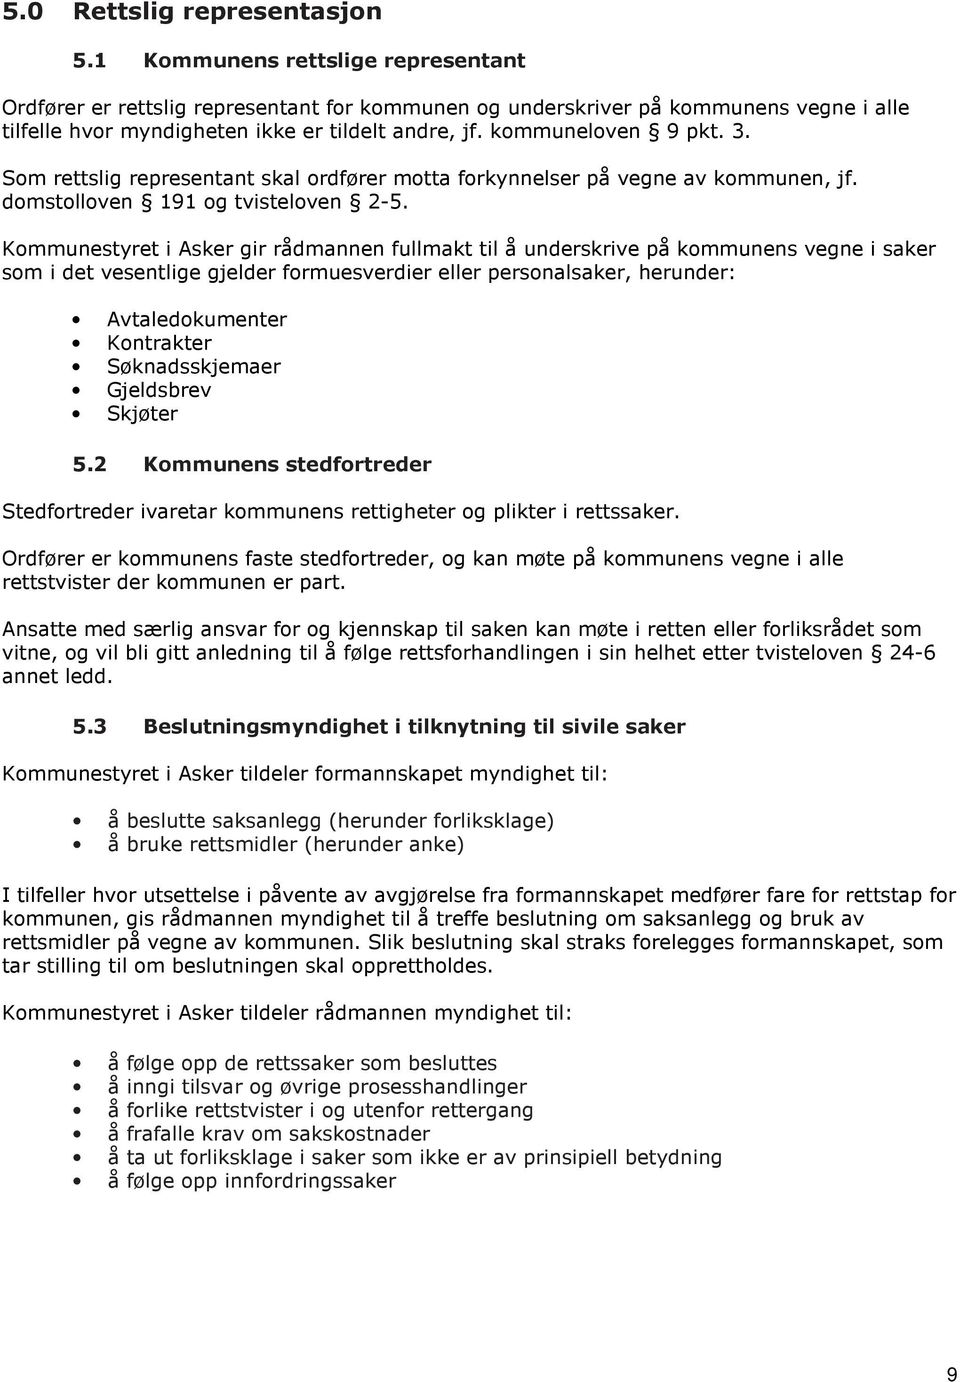 Asker kommune - delegeringsreglement - PDF Gratis nedlasting